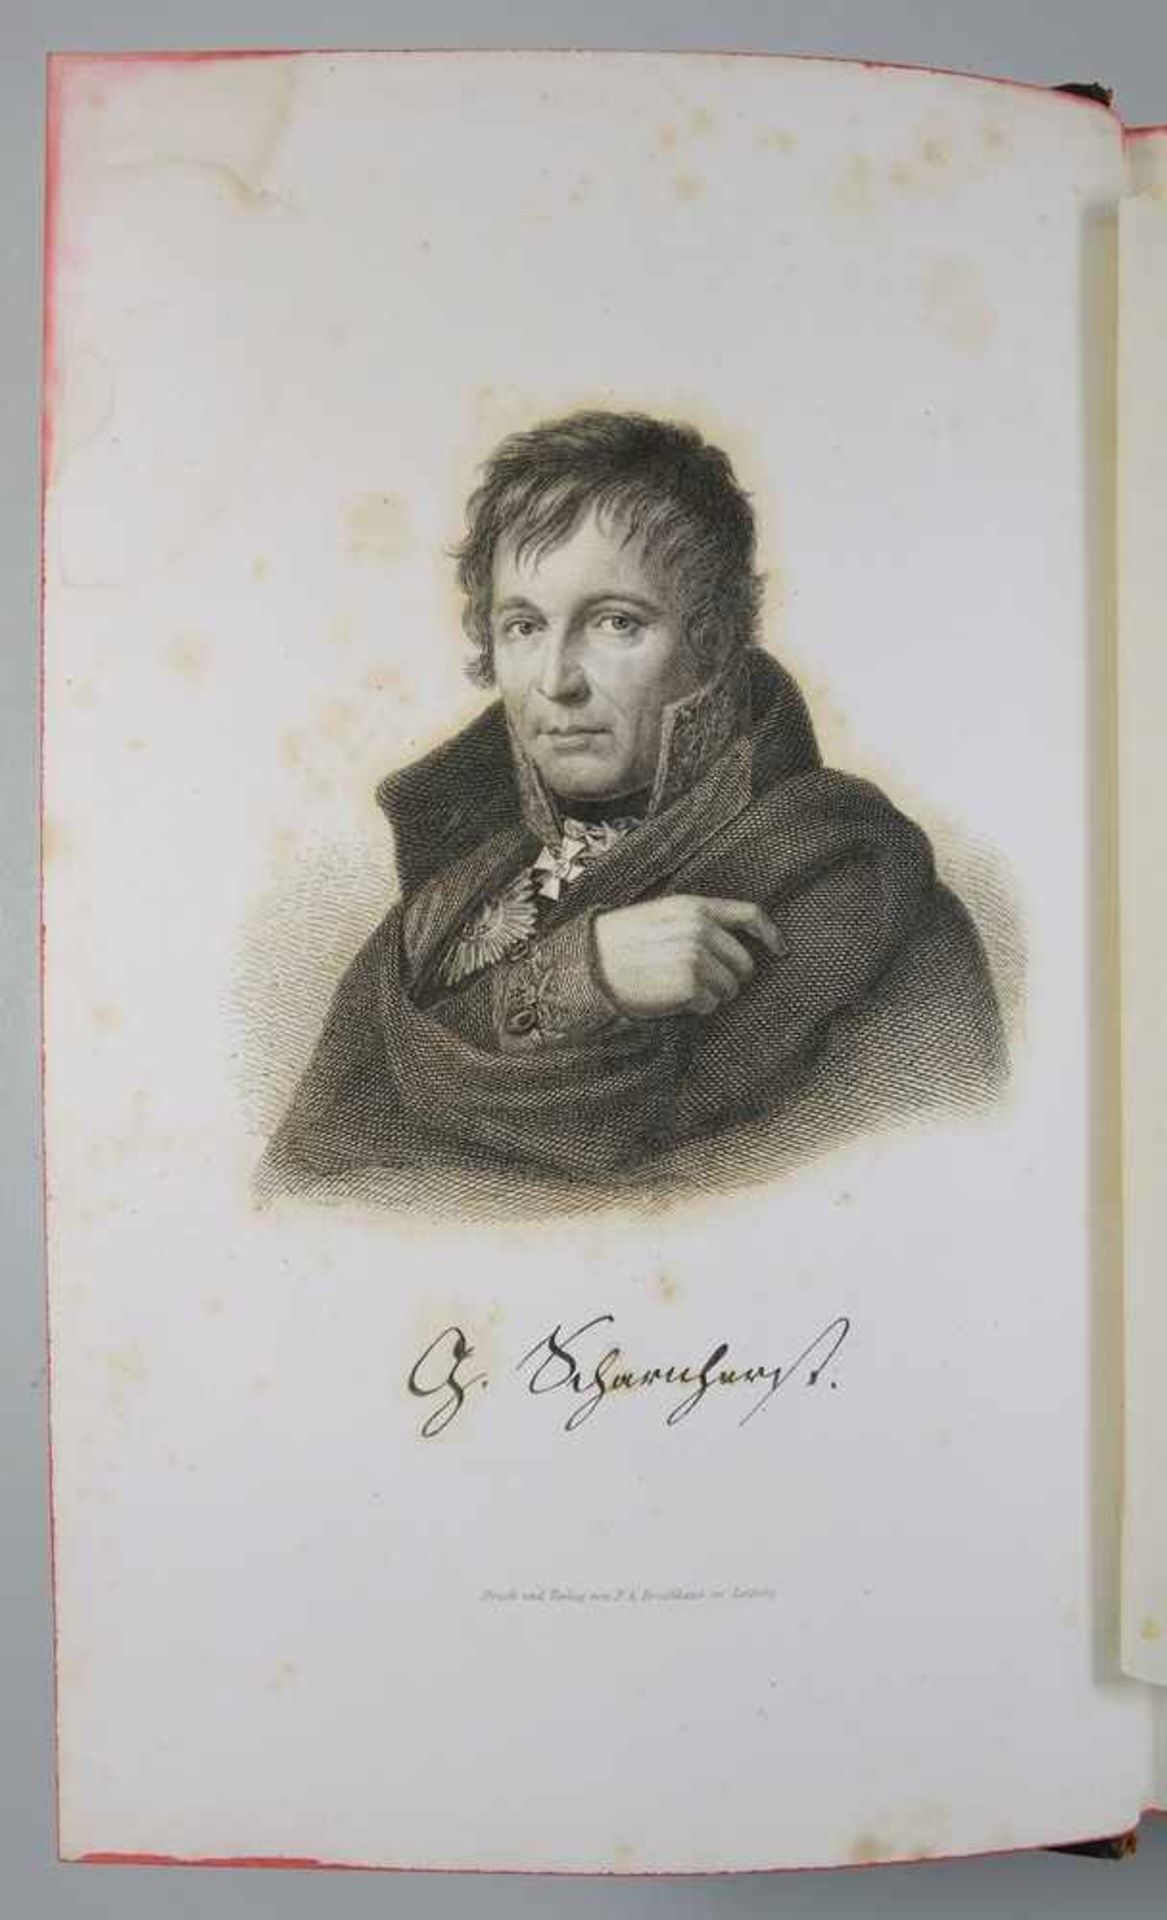 Das Leben des Generals von Scharhorst, 3 Theile in einem Band, 1869 von Georg Heinrich Klippel, - Image 2 of 3